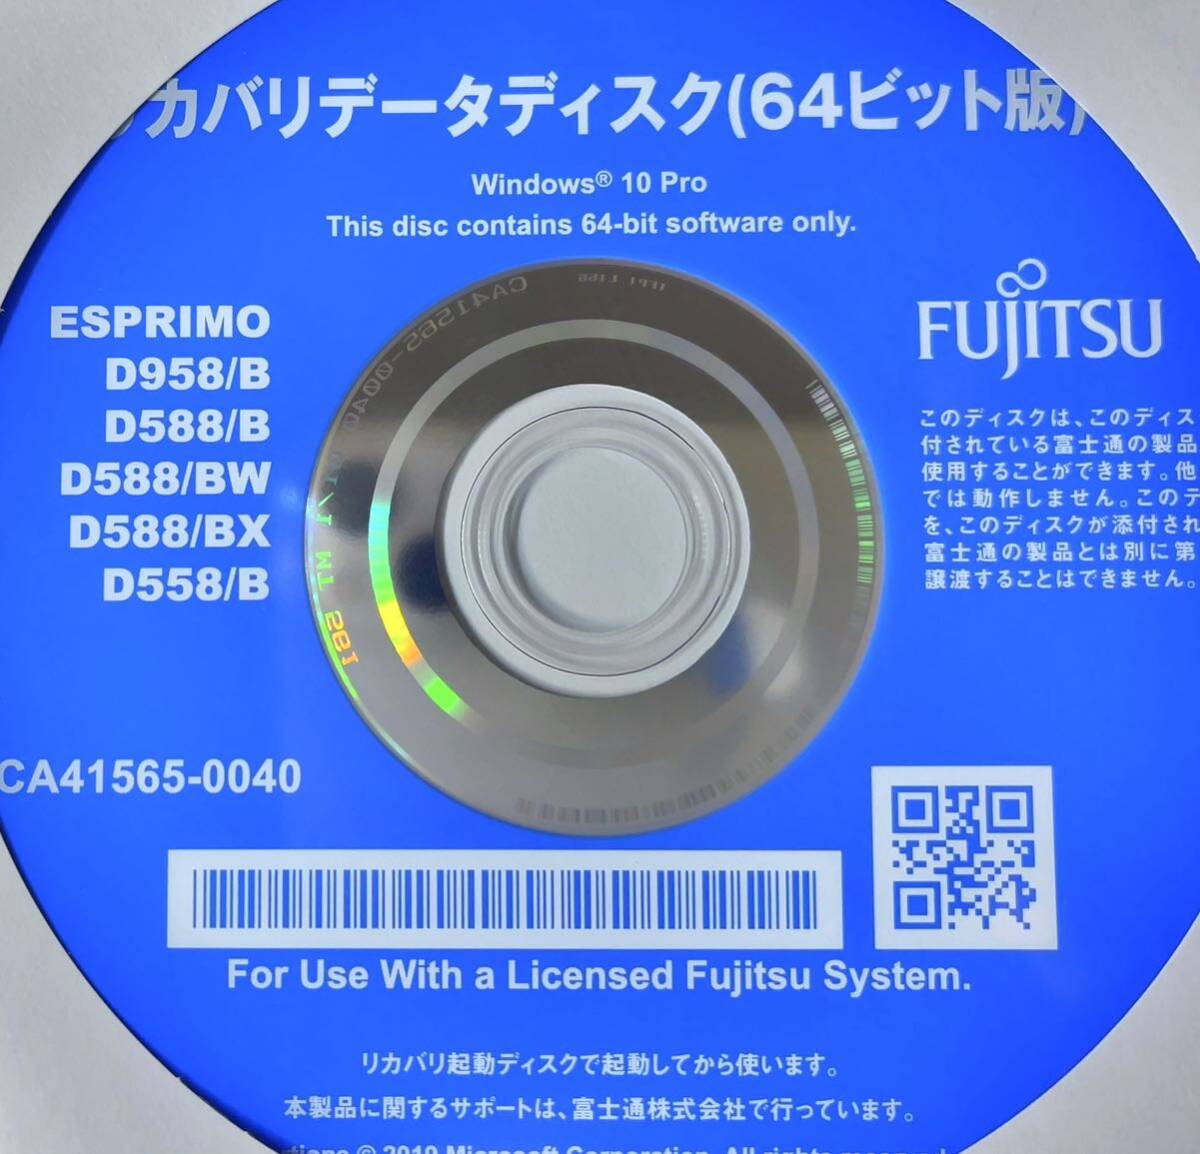 富士通 FUJITSU ESPRIMO D588/B Win10Pro リカバリーディスク 未開封品 4枚セット_画像3